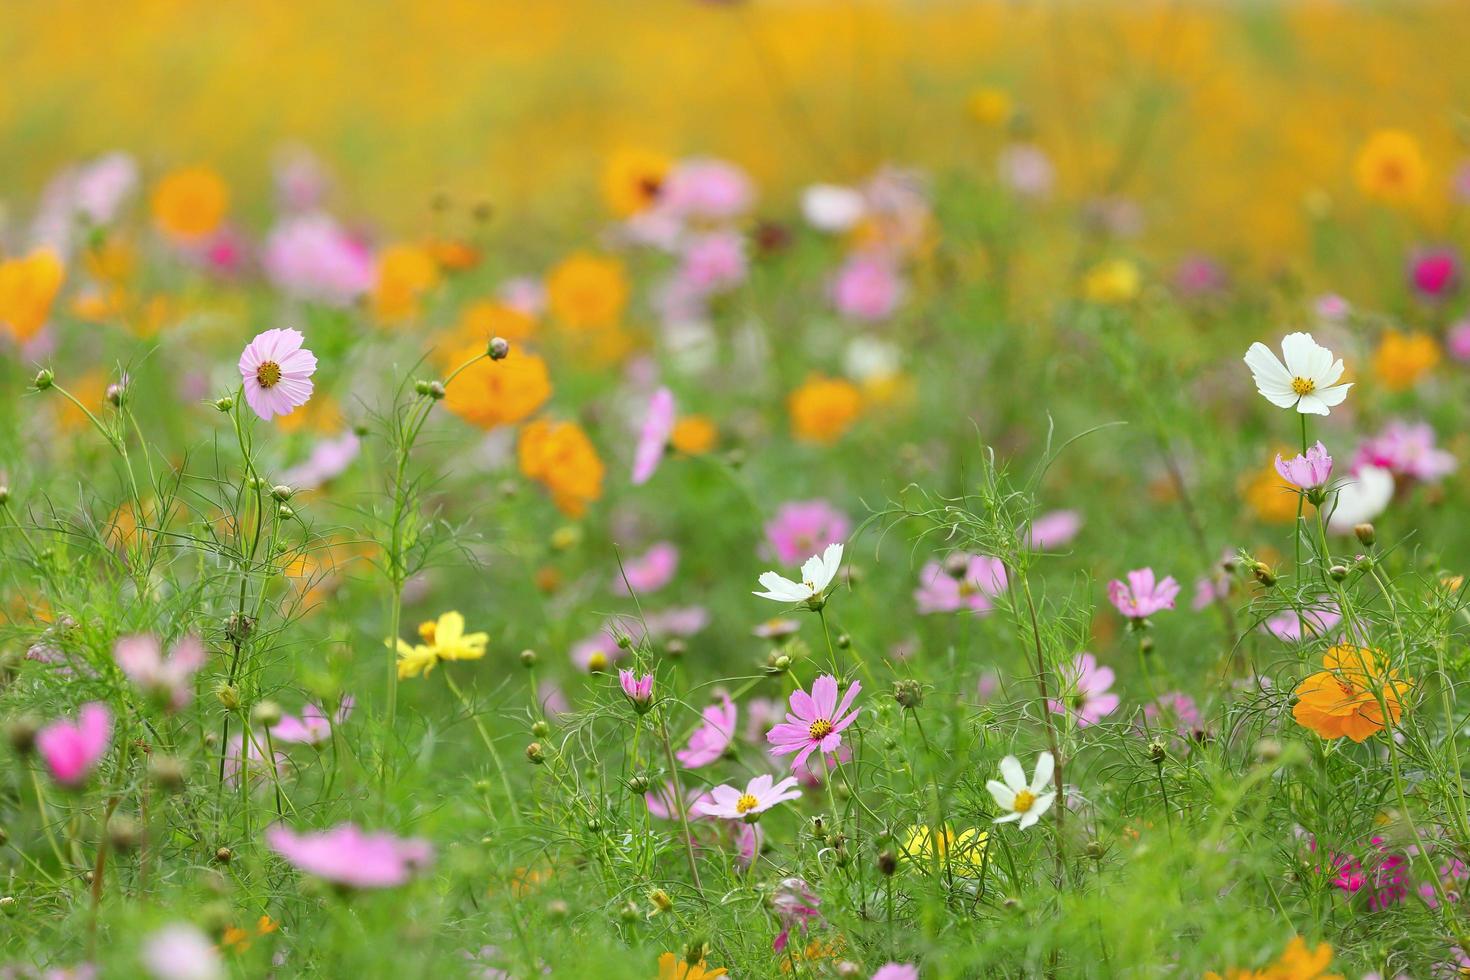 Rosa, gelbe und weiße Kosmos-Blumenwiese im Sommer für Natur- und Bauerngarten-Designzwecke foto